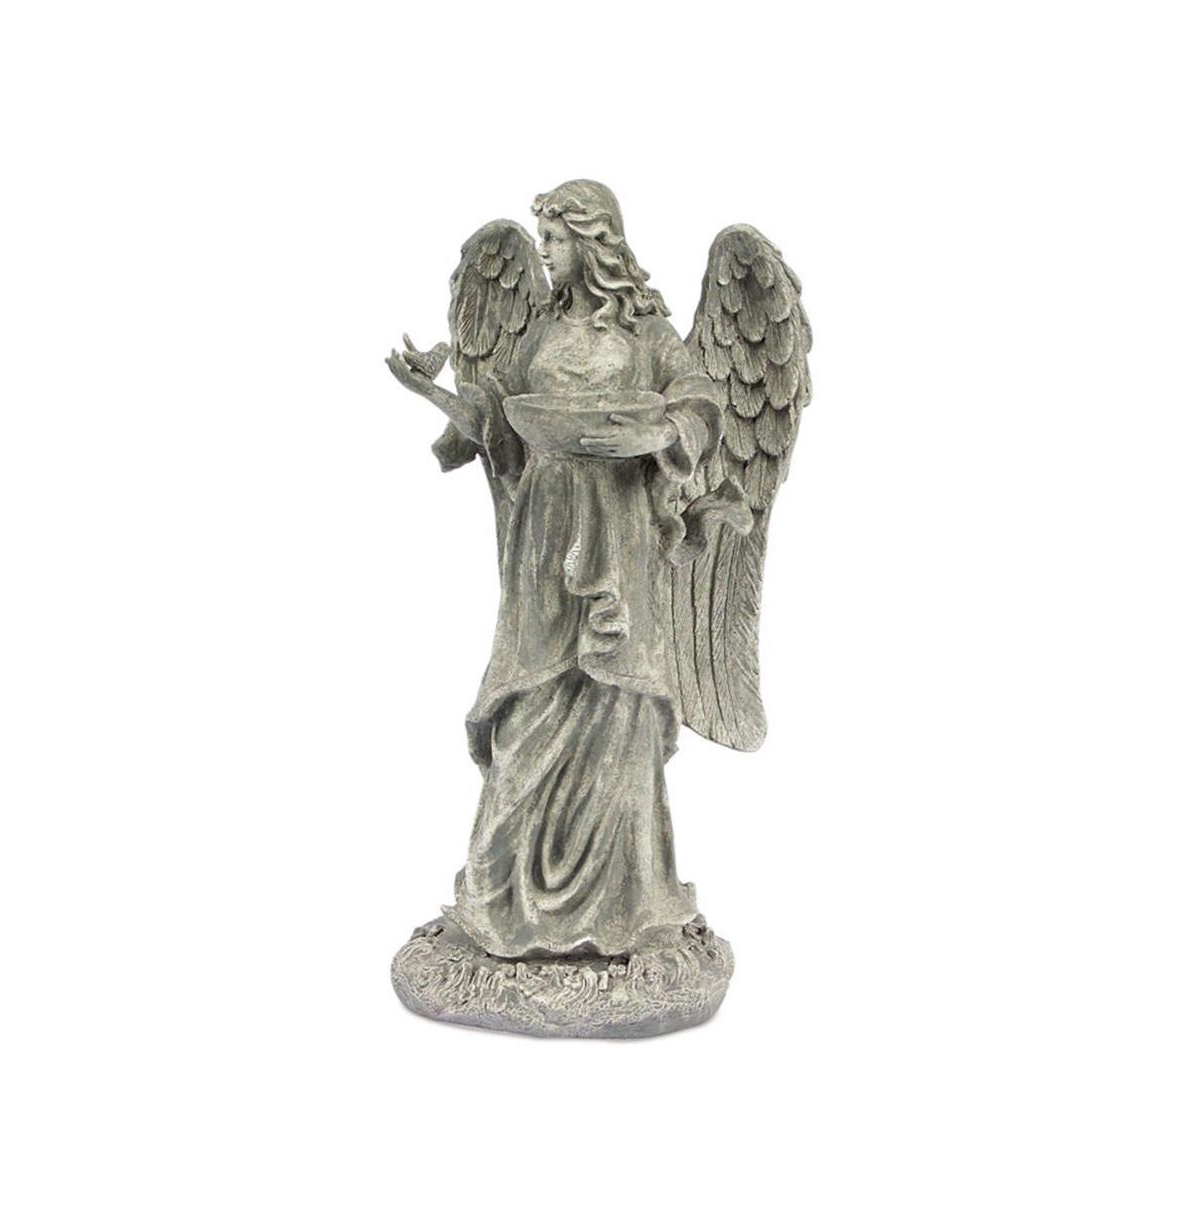 Garden Angel Statue With Birdfeeder Or Bath Bowl 23"h - Grey